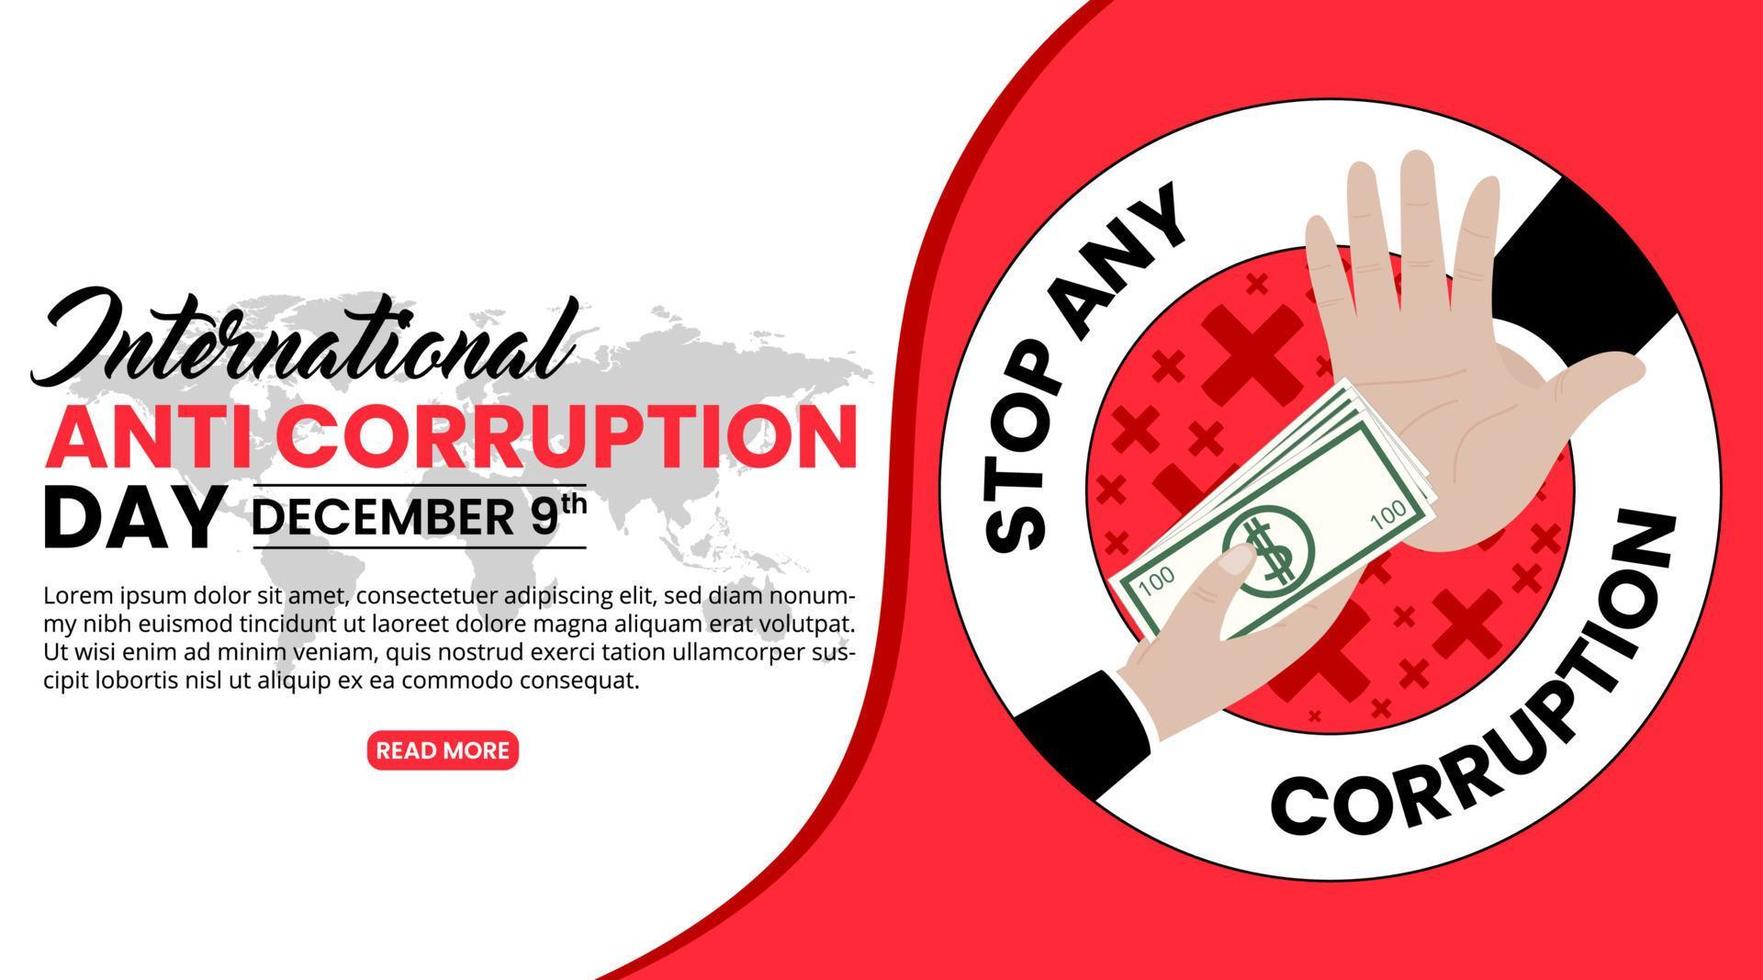 fond de la journée internationale de lutte contre la corruption avec des mains illustrées comme une action de corruption rejetée vecteur